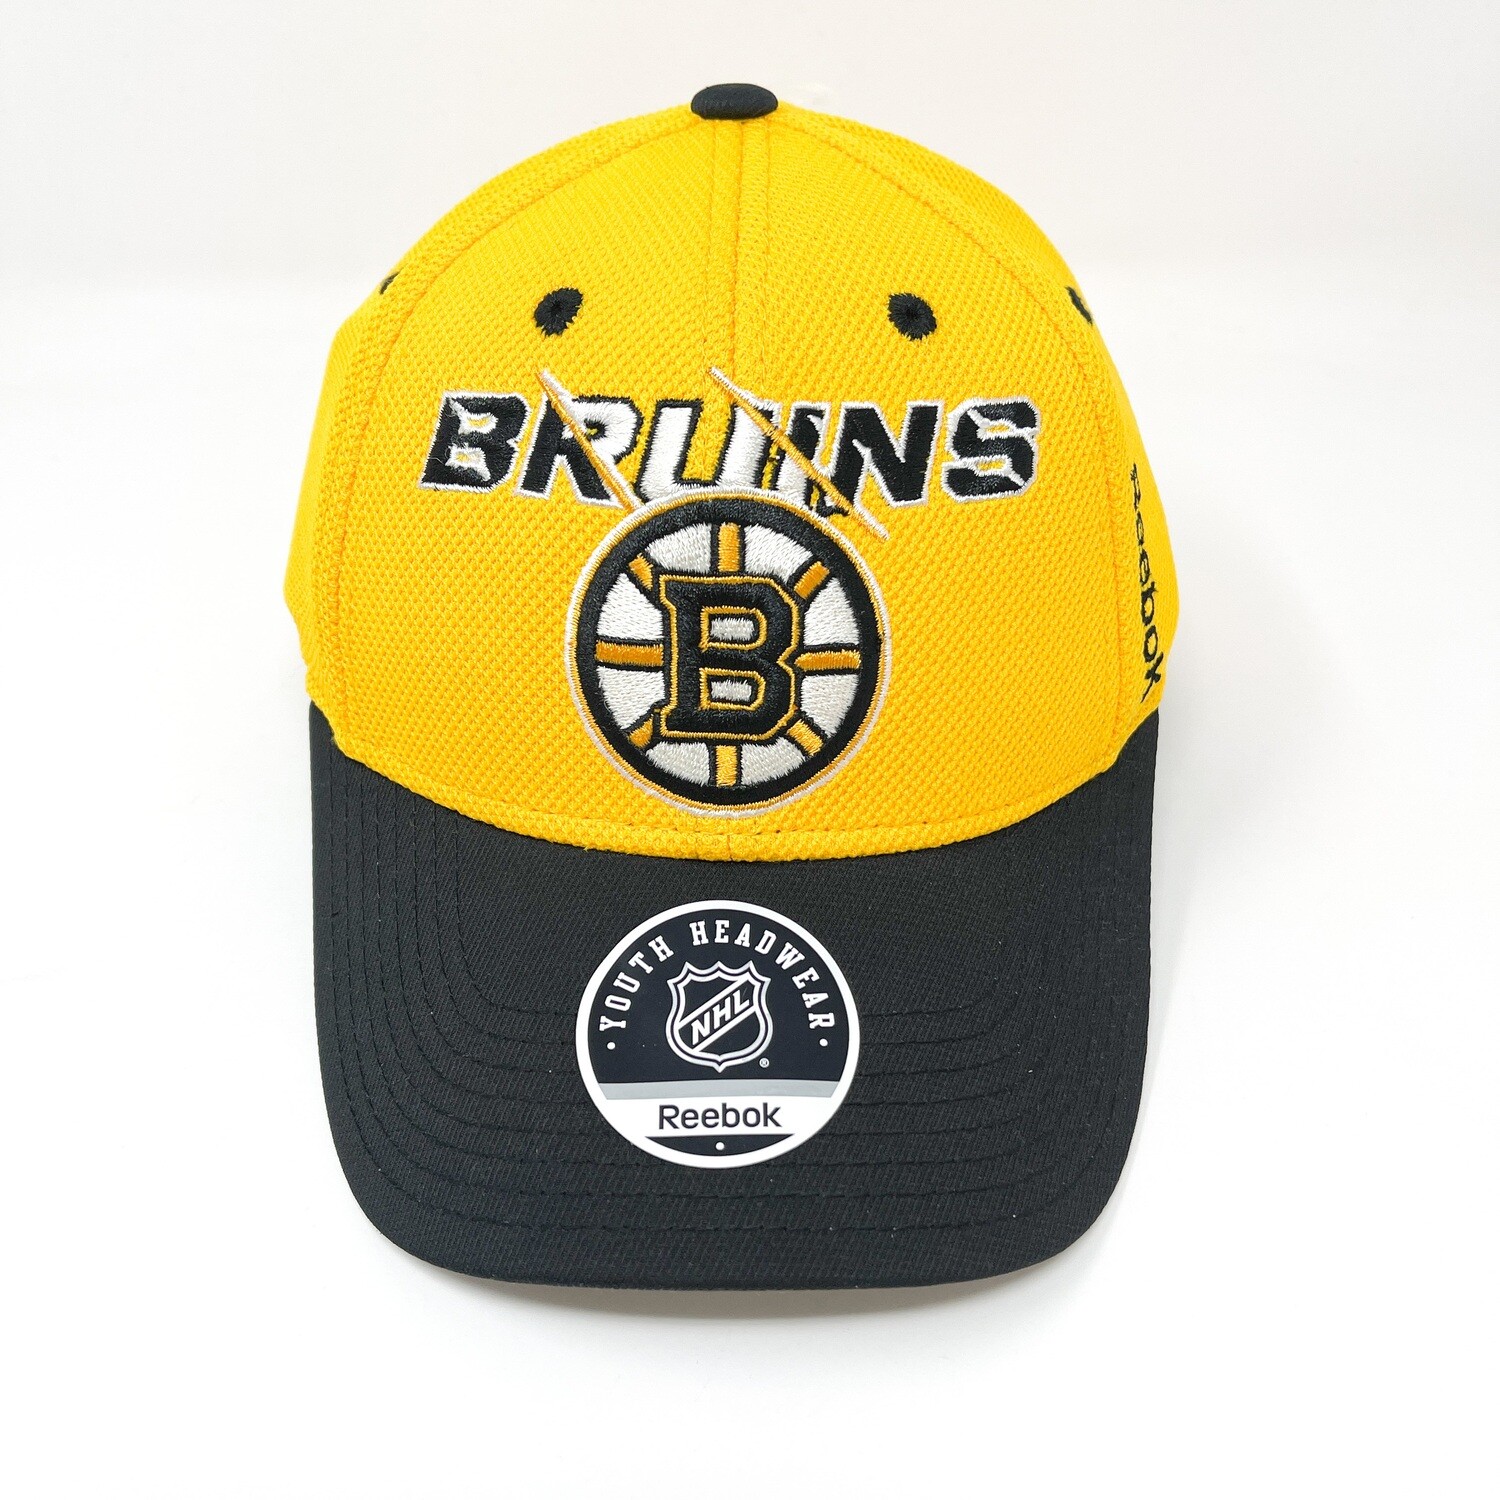 Boston Bruins Reebok Youth Structured Flex Hat